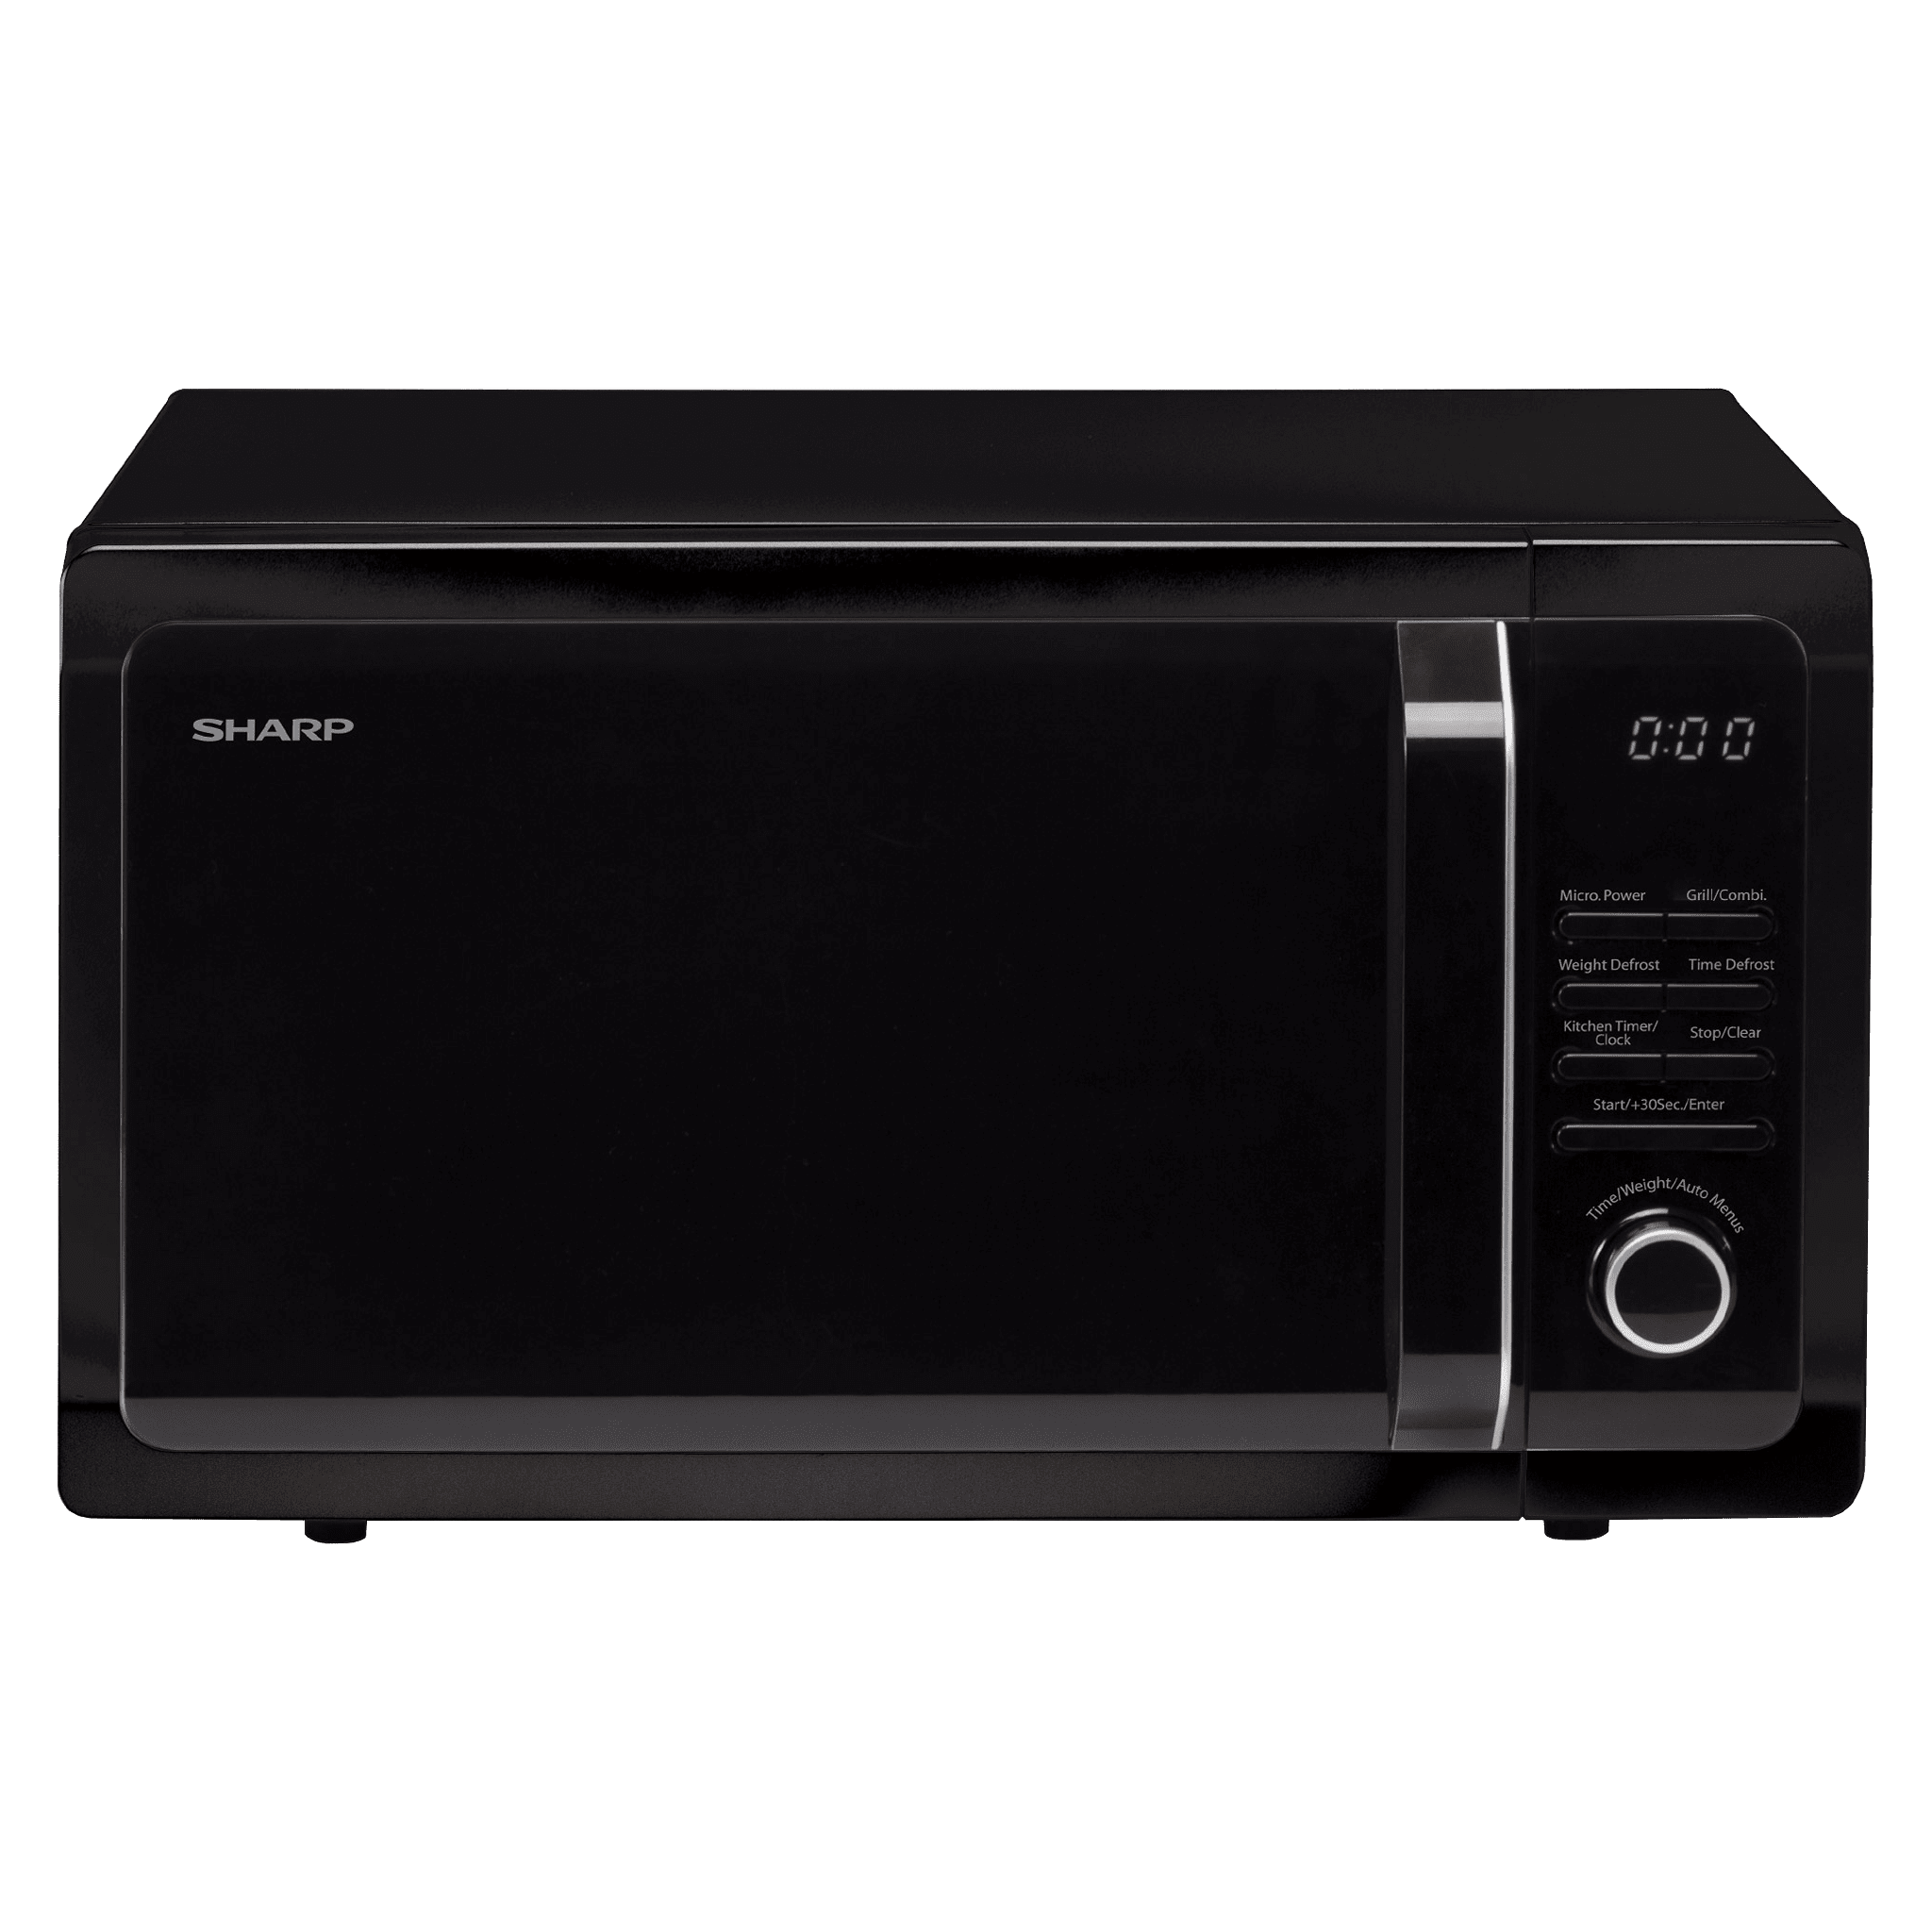 Свч экран. Микроволновая печь Sharp r-870b. Microwave Oven Sharp. Sharp микроволновая печь. Микроволновка Шарп механическая r-212.